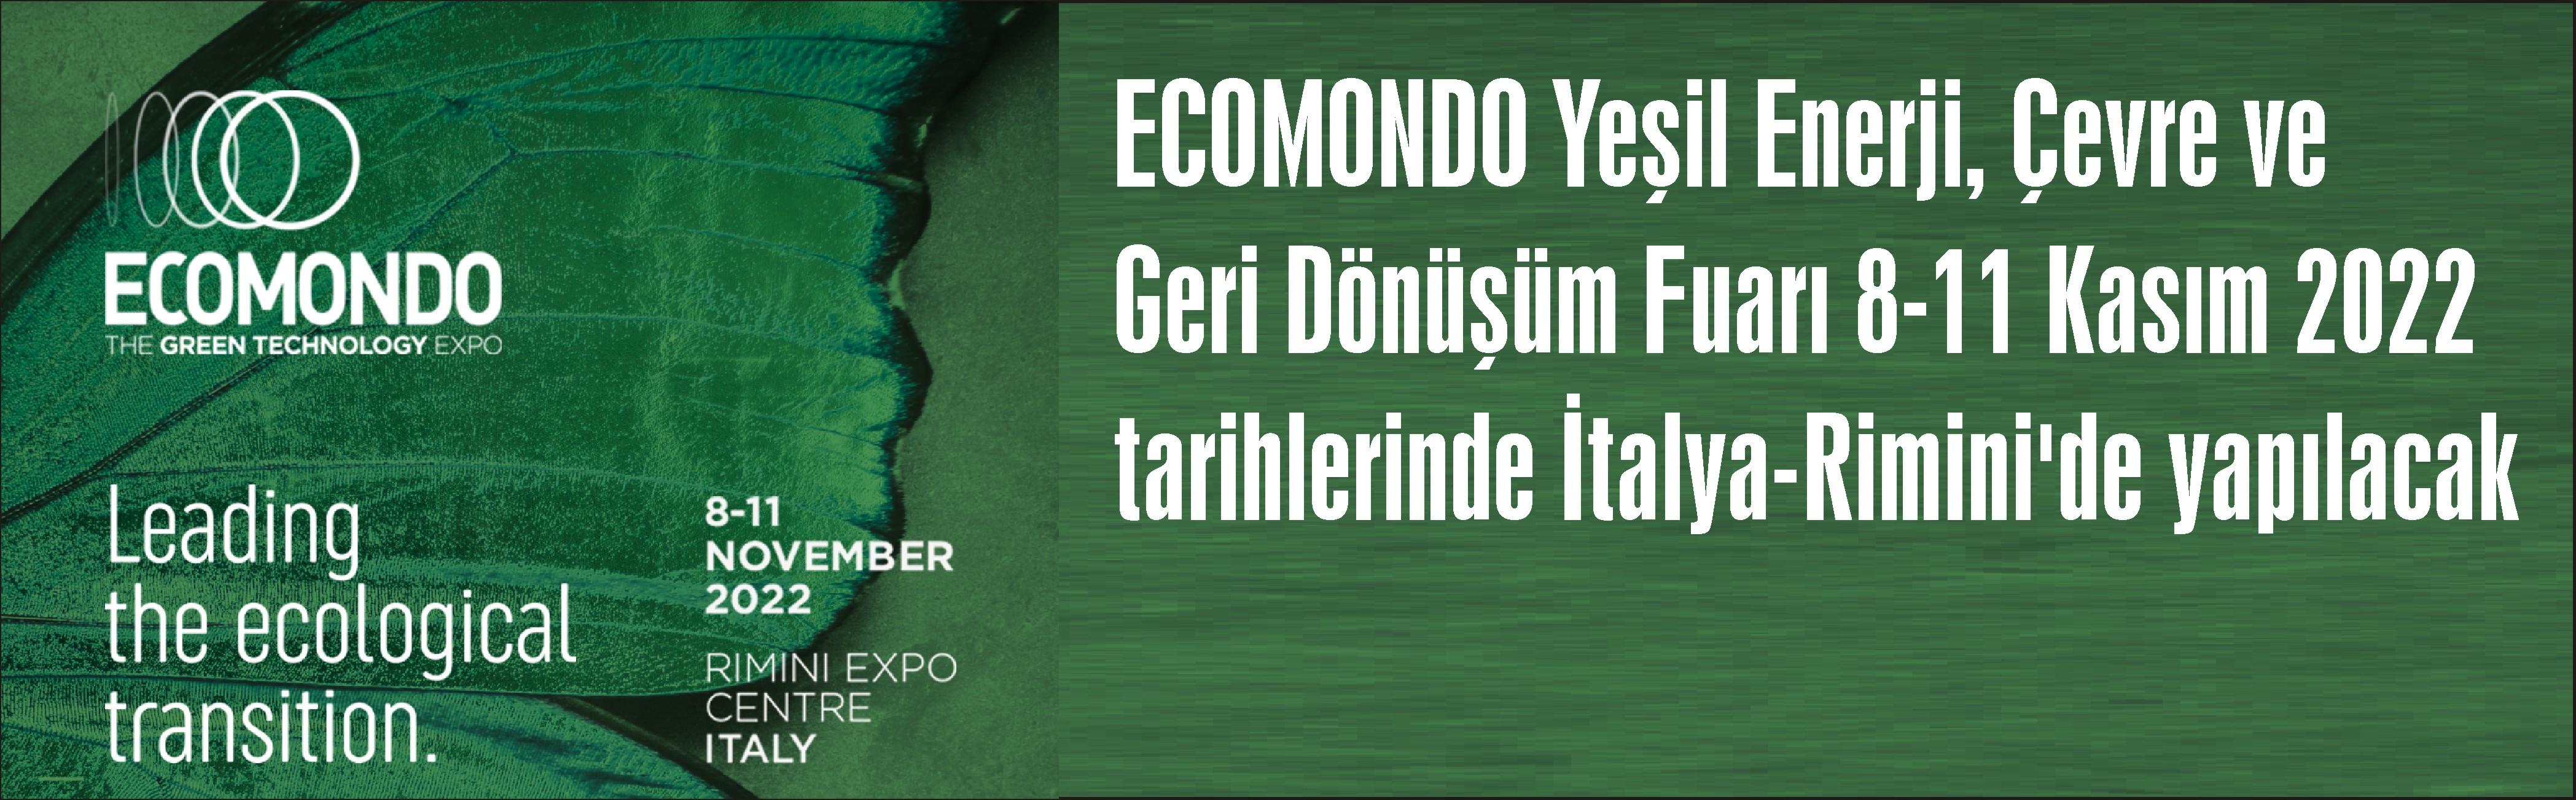 ECOMONDO Yeşil Enerji, Çevre ve Geri Dönüşüm Fuarı 8-11 Kasım 2022 tarihlerinde İtalya